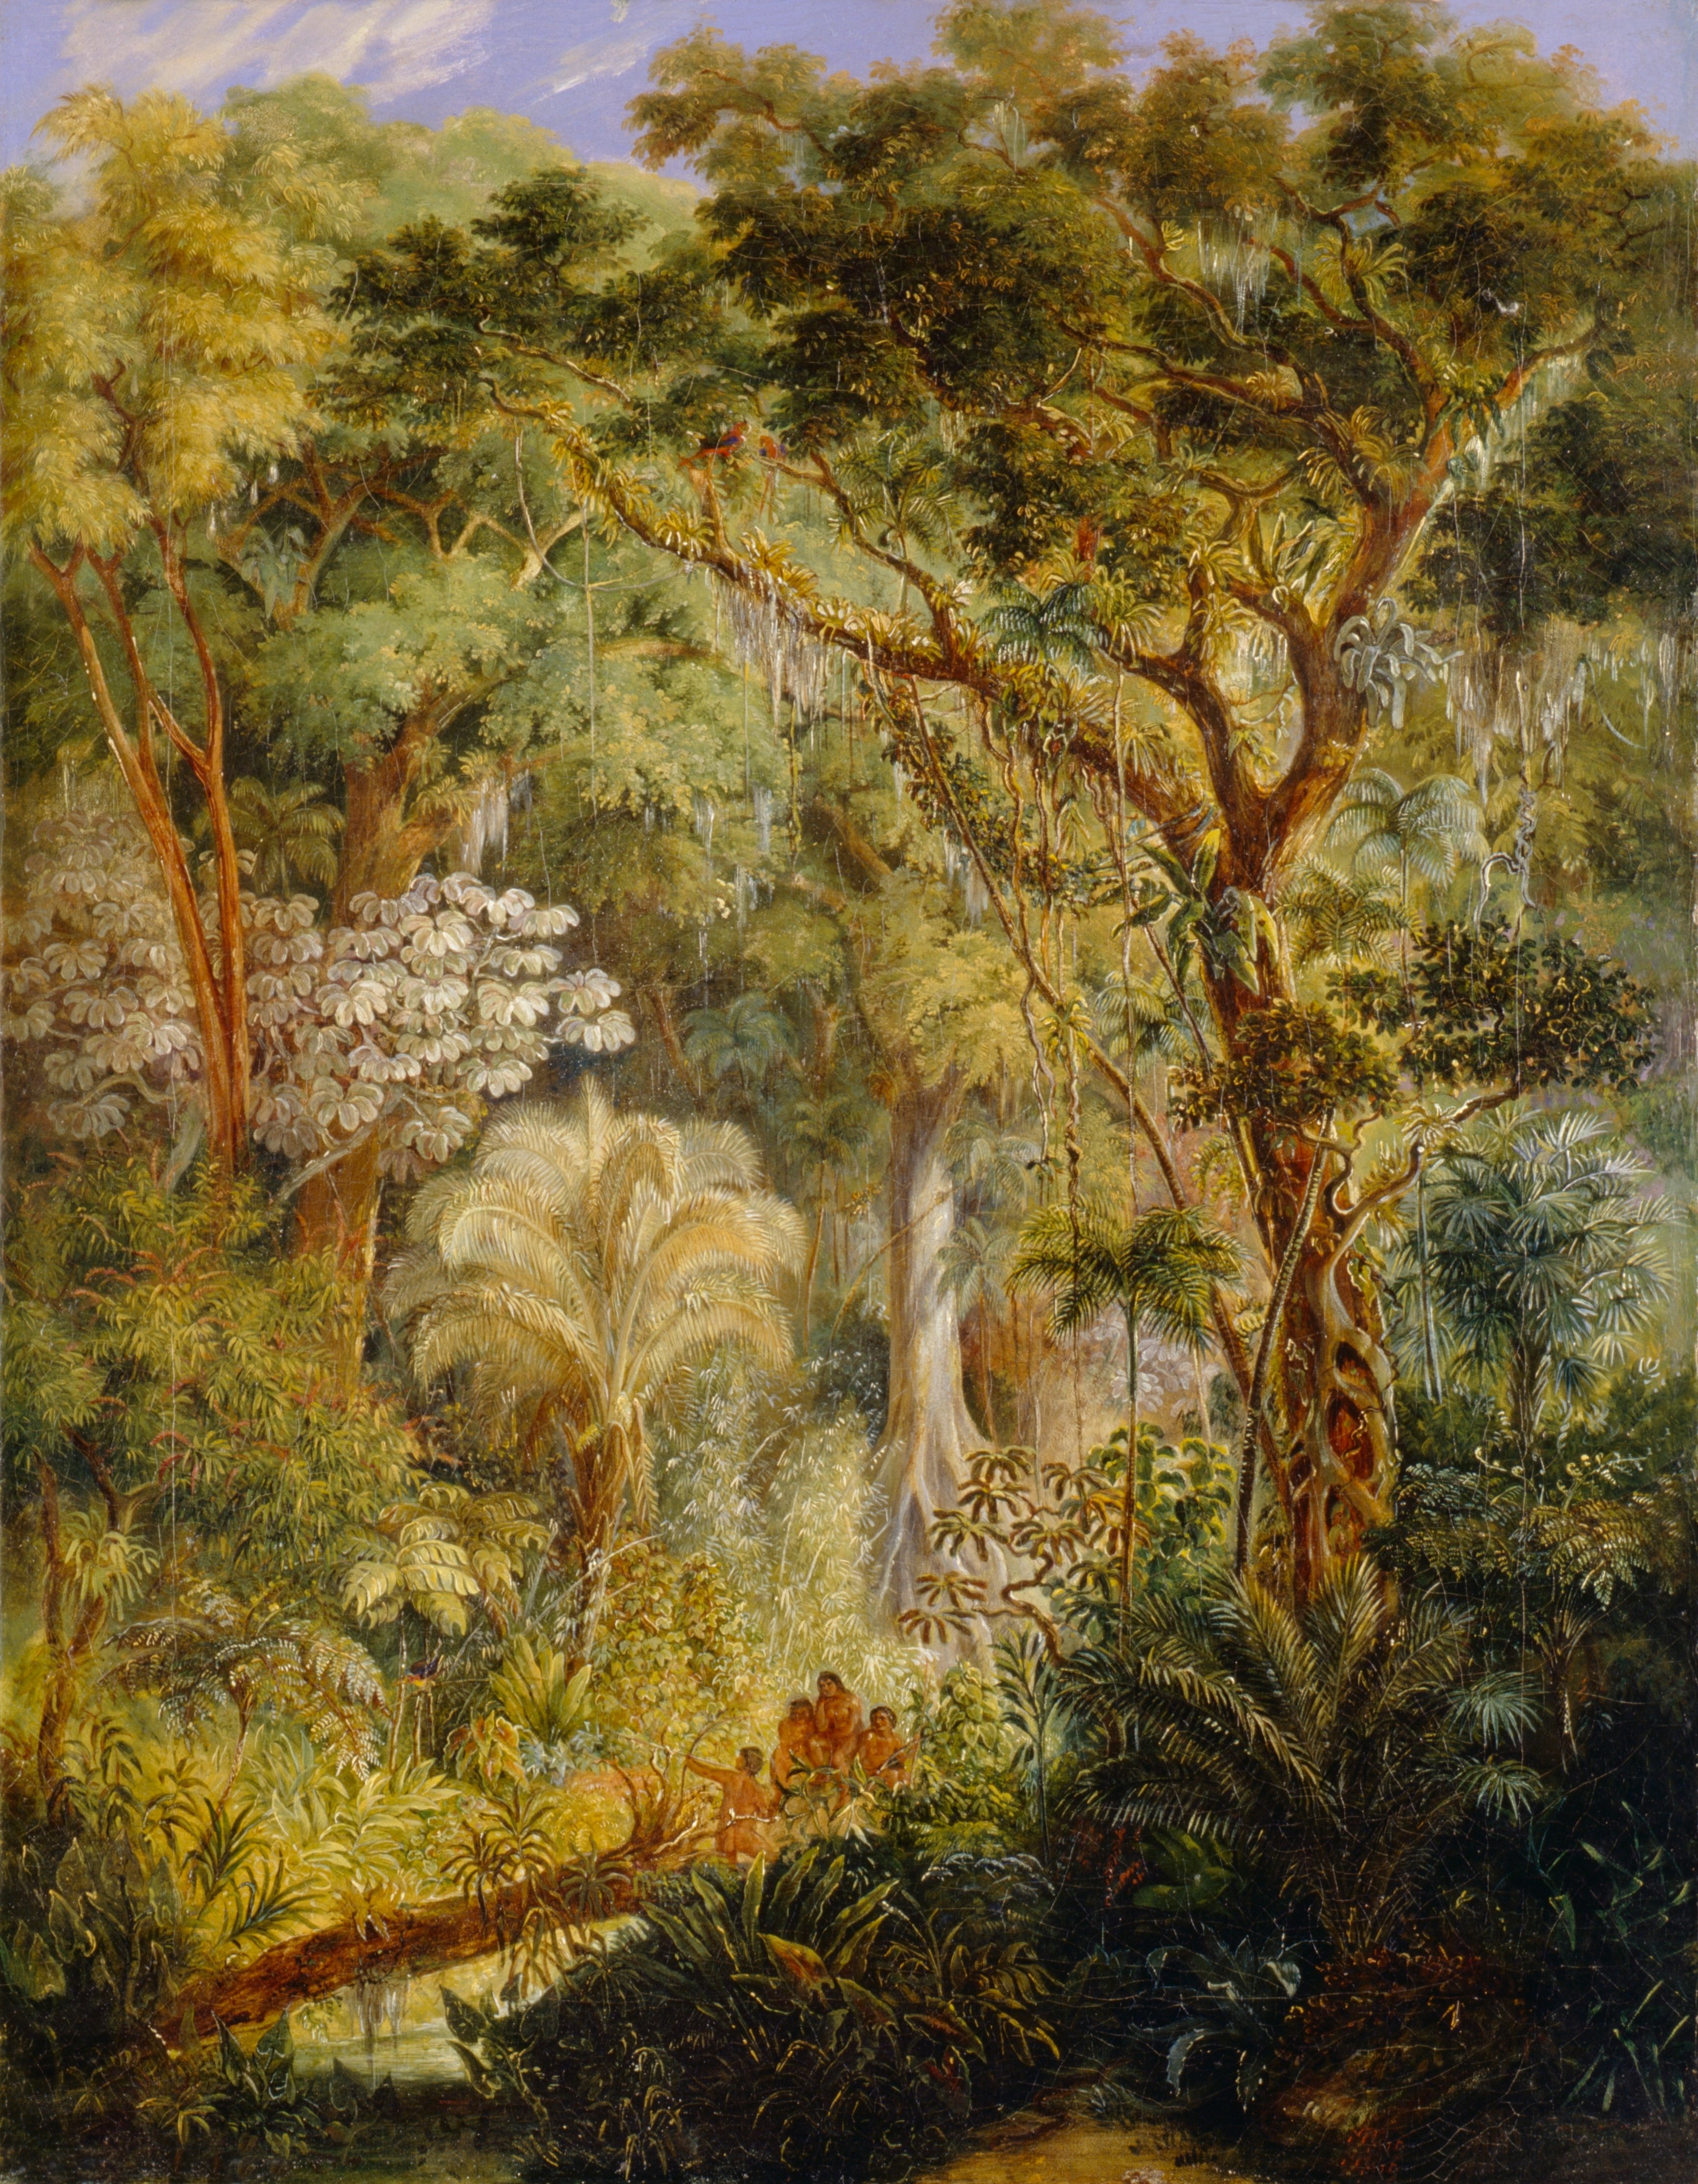 Rugendas, Johann Moritz: Brasilianischer Urwald, 1830, GK I 1271. (Stiftung Preußische Schlösser und Gärten Berlin-Brandenburg CC BY-NC-SA)